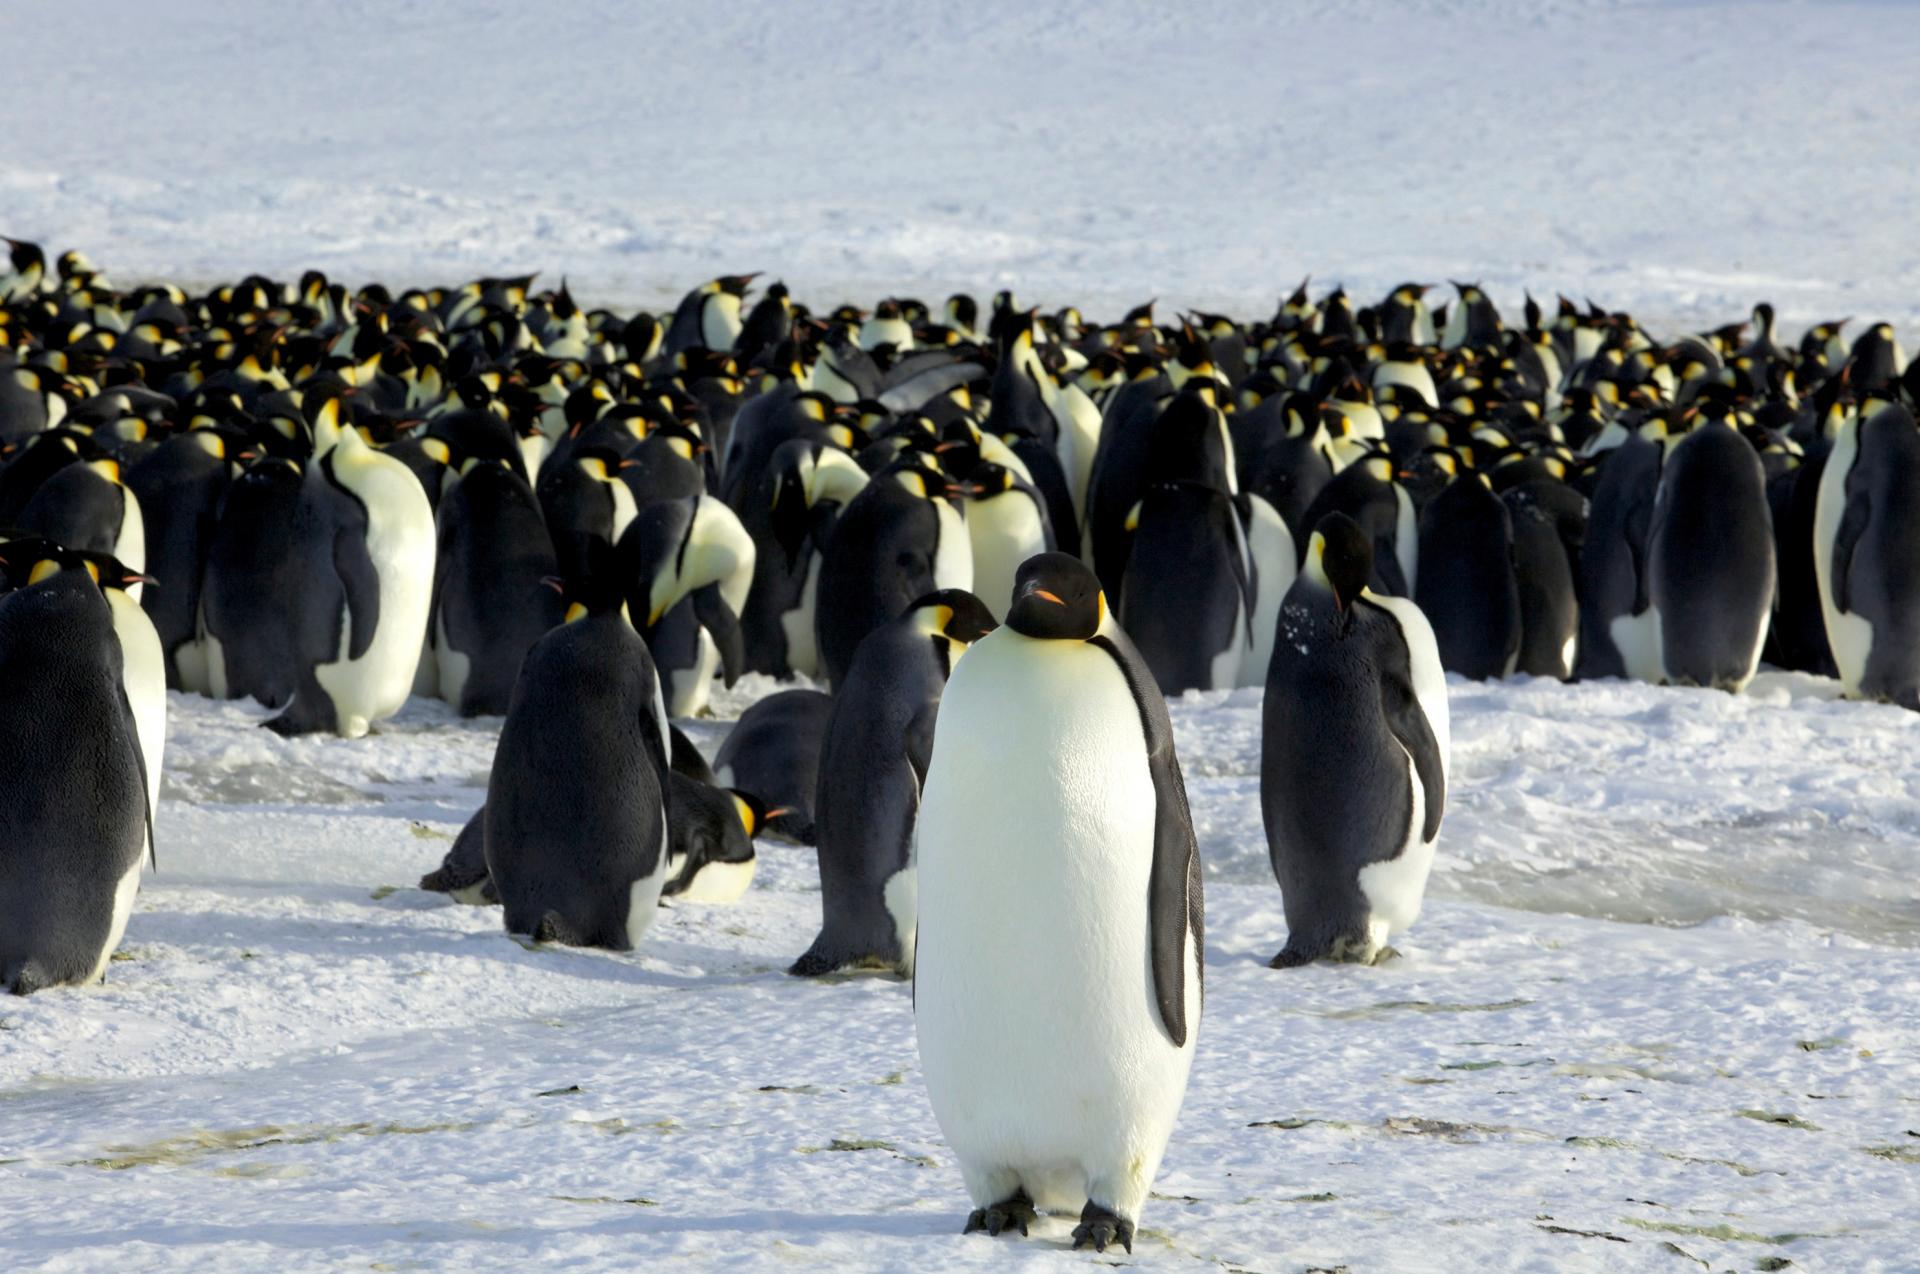 Tučniaky cisárske budú ohrozeným druhom. V Antarktíde ich tisíce uhynuli následkom predčasného topenia ľadu